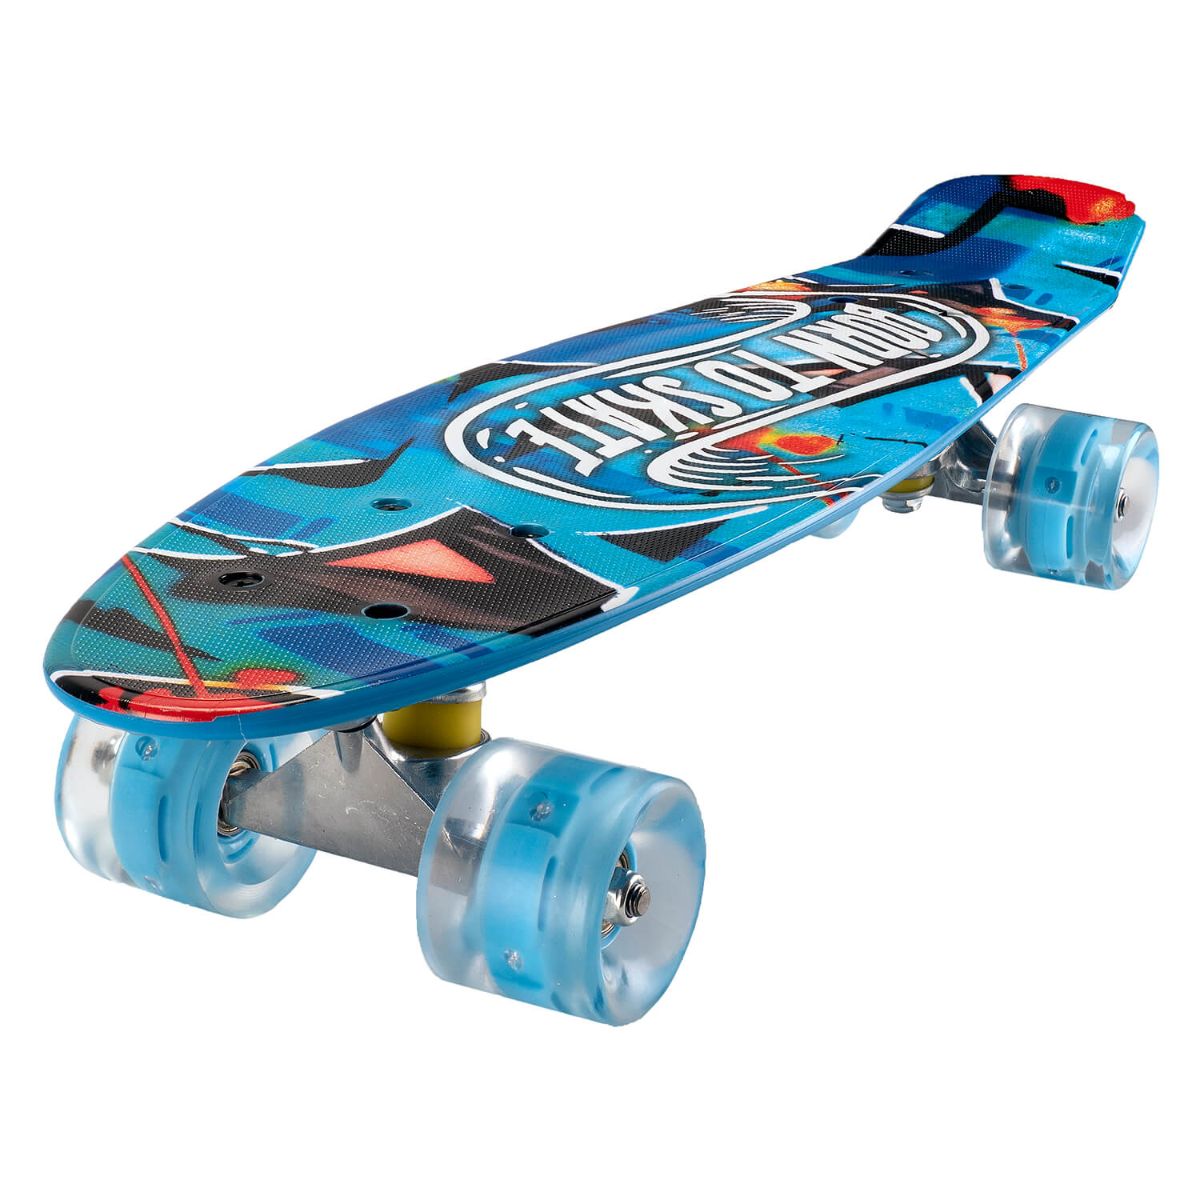 Penny board Action One, Cu roti luminoase, 22 cm, ABEC-7 PU, Aluminium 90 kg, Born to skate Role si skateboard imagine 2022